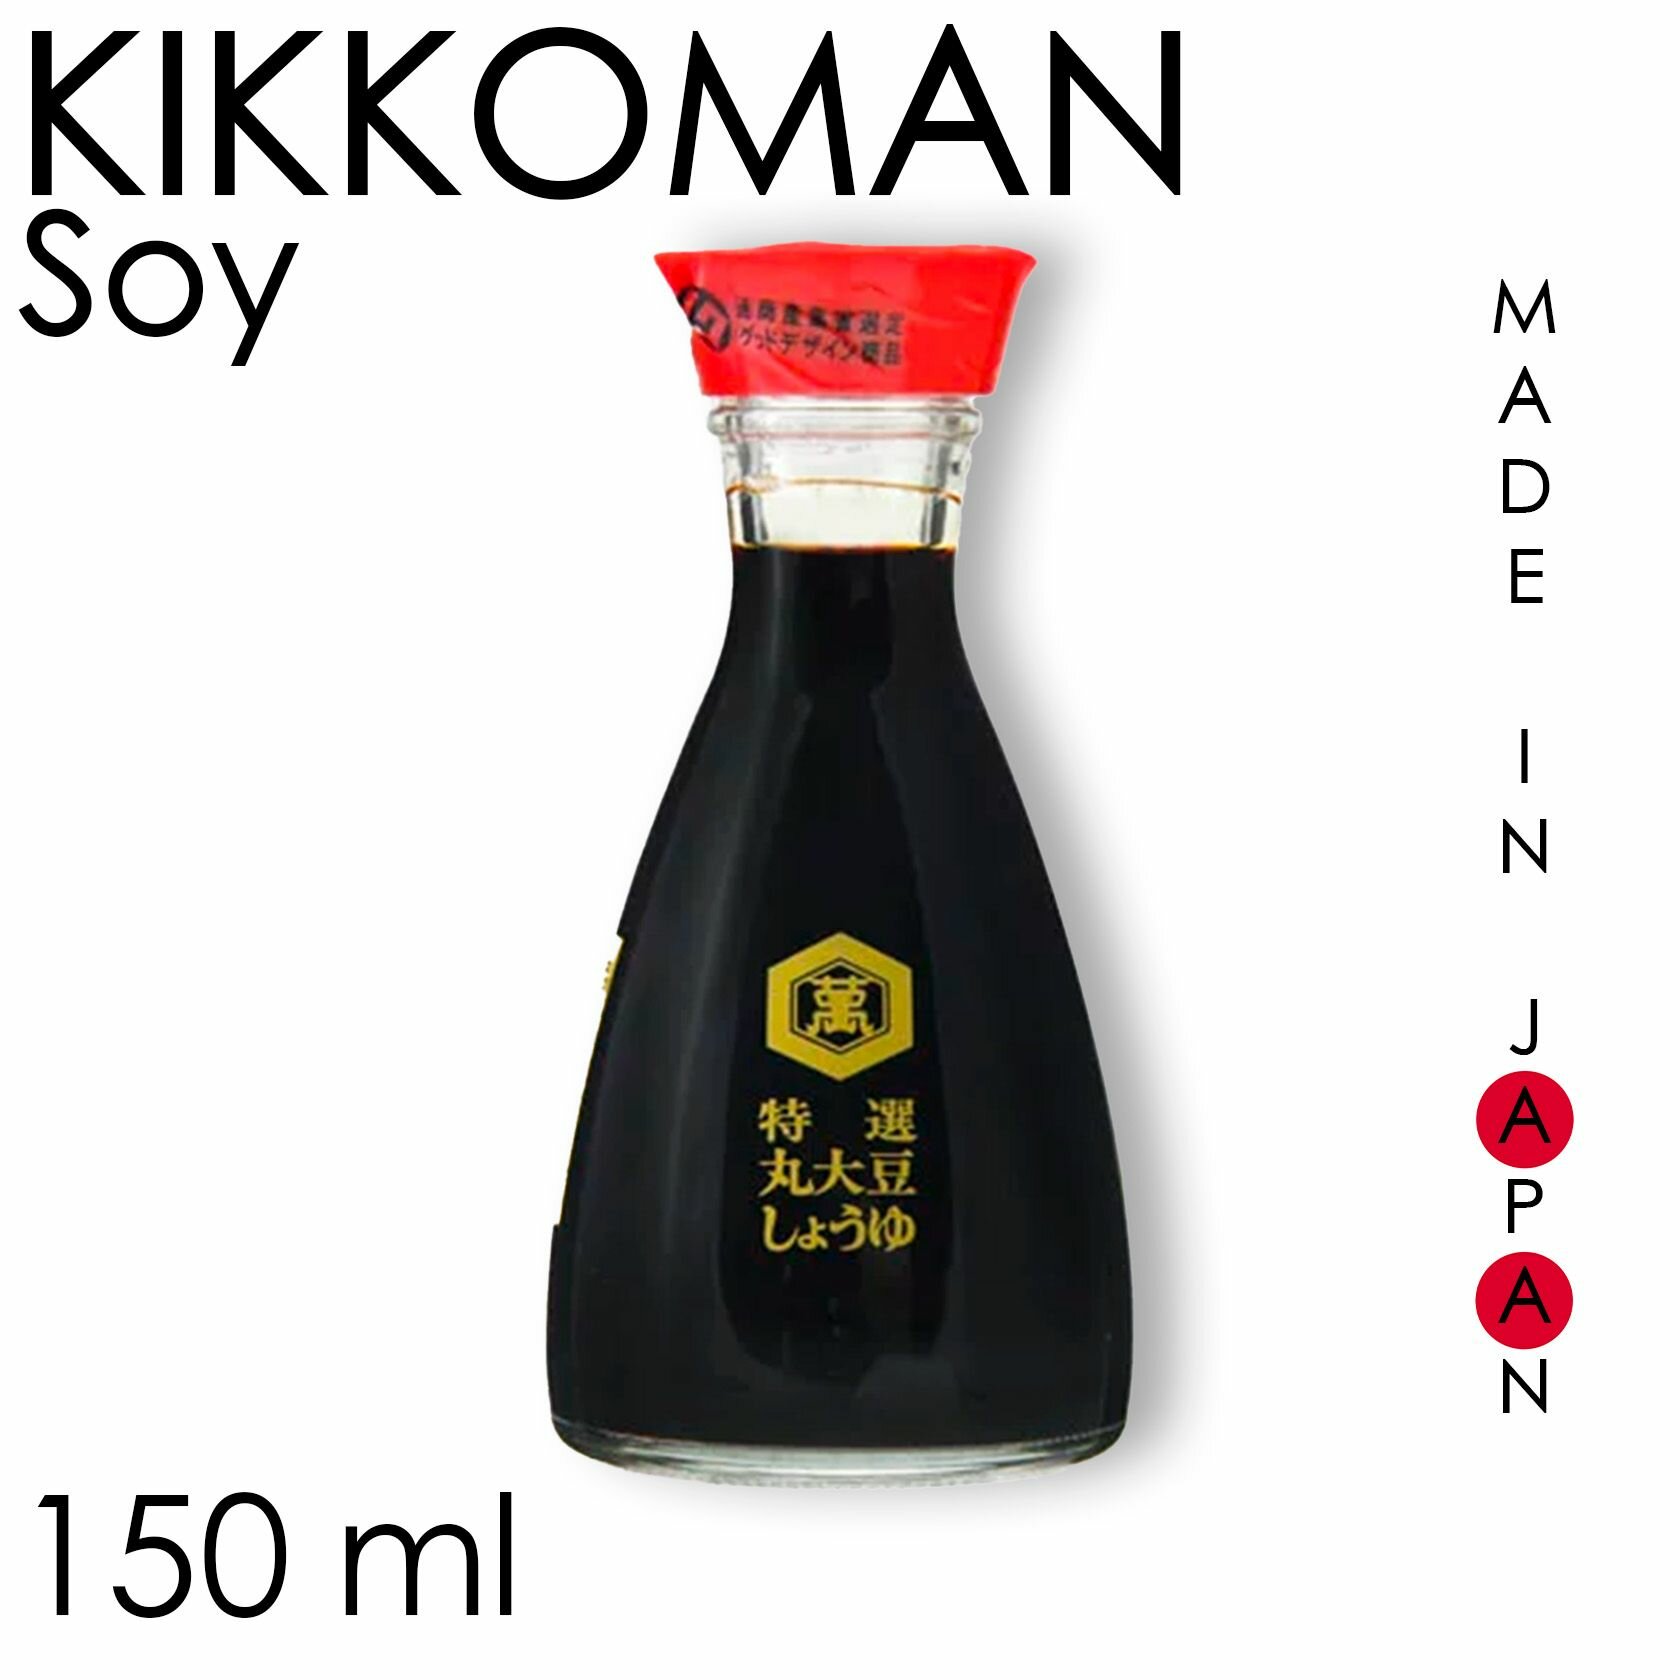 Японский соевый соус Kikkoman классический, 150 мл, Япония